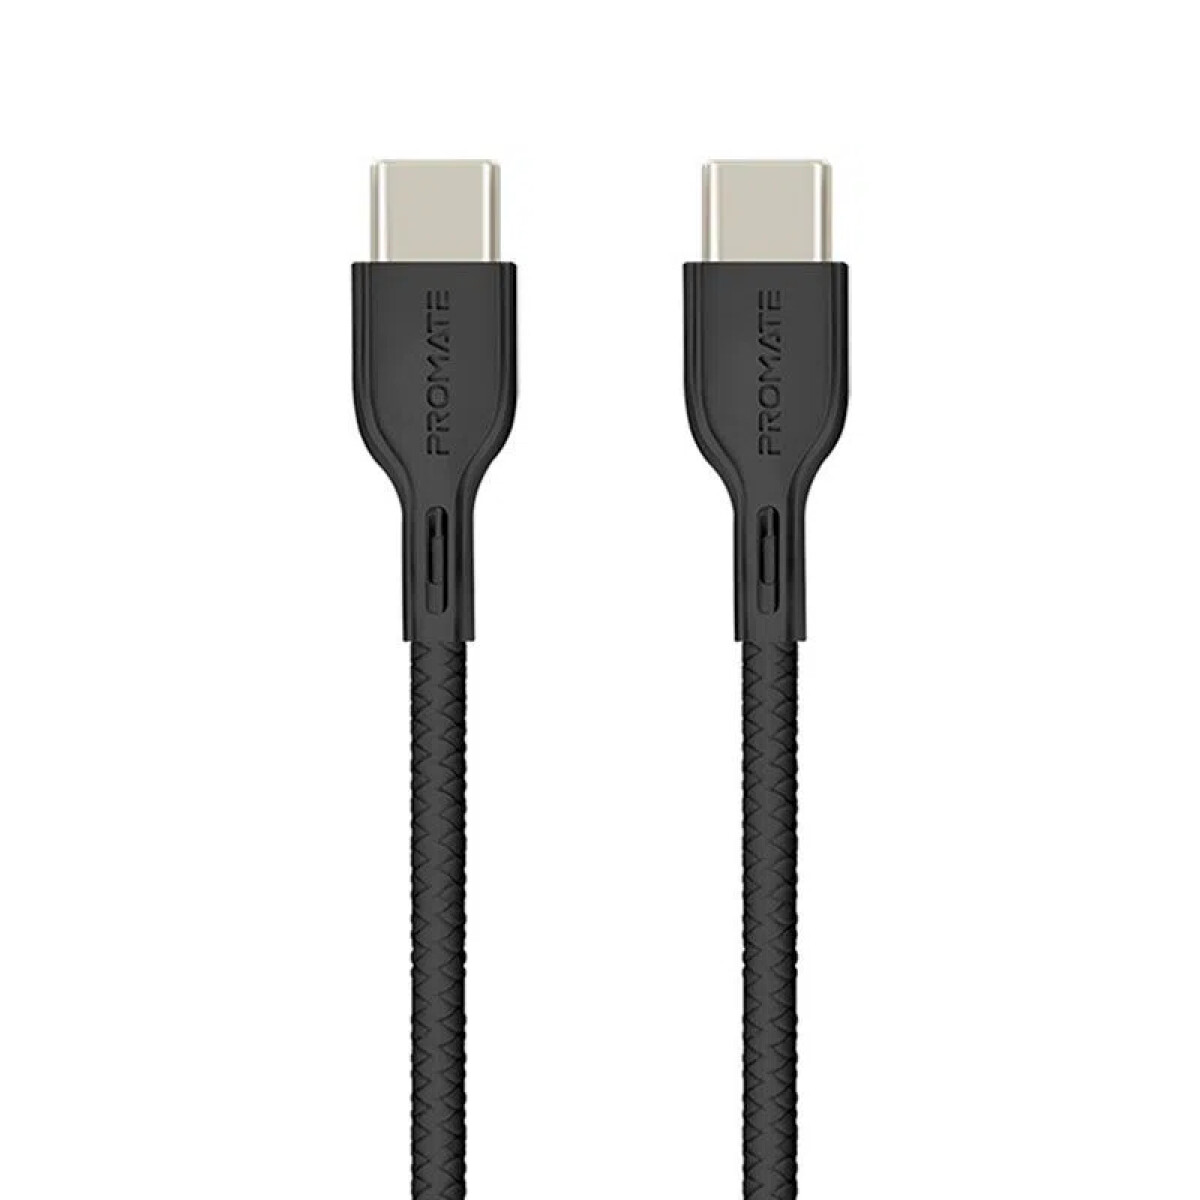 Promate powerbeam cc cable usb-c con power deliv. 1.2m negro - Promate Powerbeam Cc Cable Usb-c Con Power Deliv. 1.2m Negro 